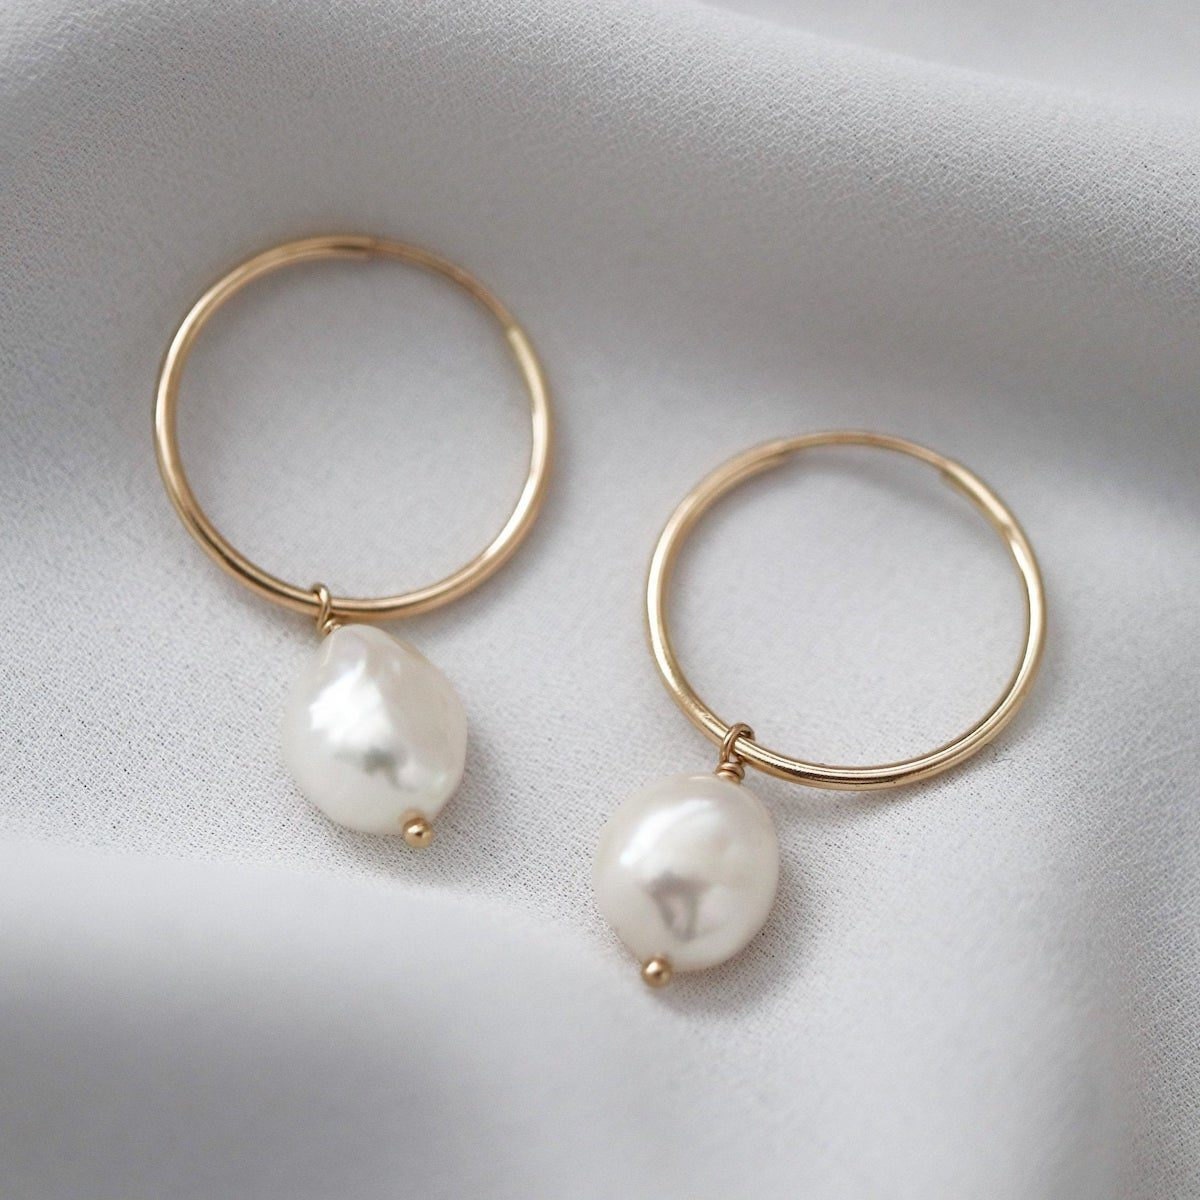 Pearl hoop earrings from EVREN